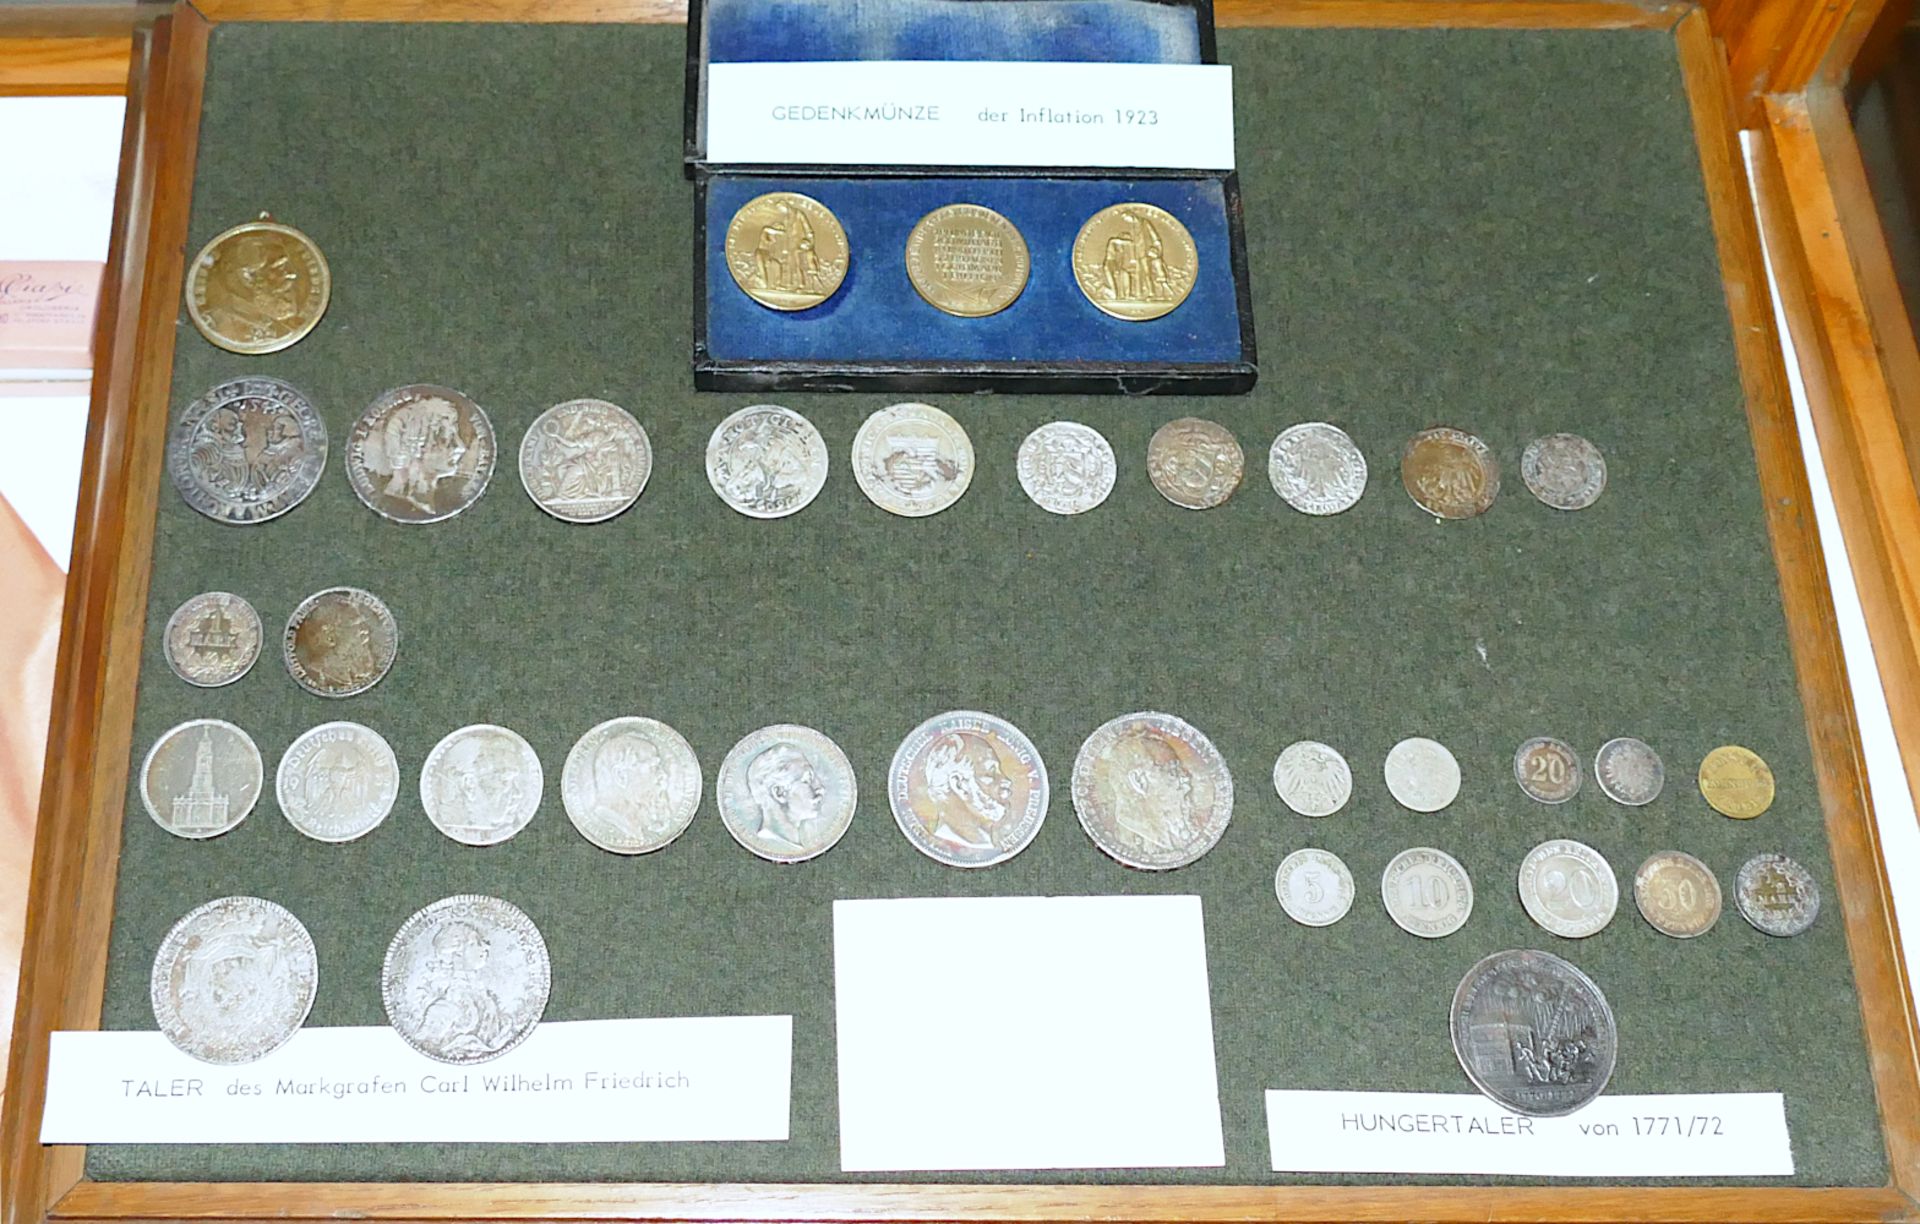 1 Schauvitrine mit Münzen und Scheinen, z.T. wohl 16.-20. Jh. (§ 86 / § 86 A StGB)